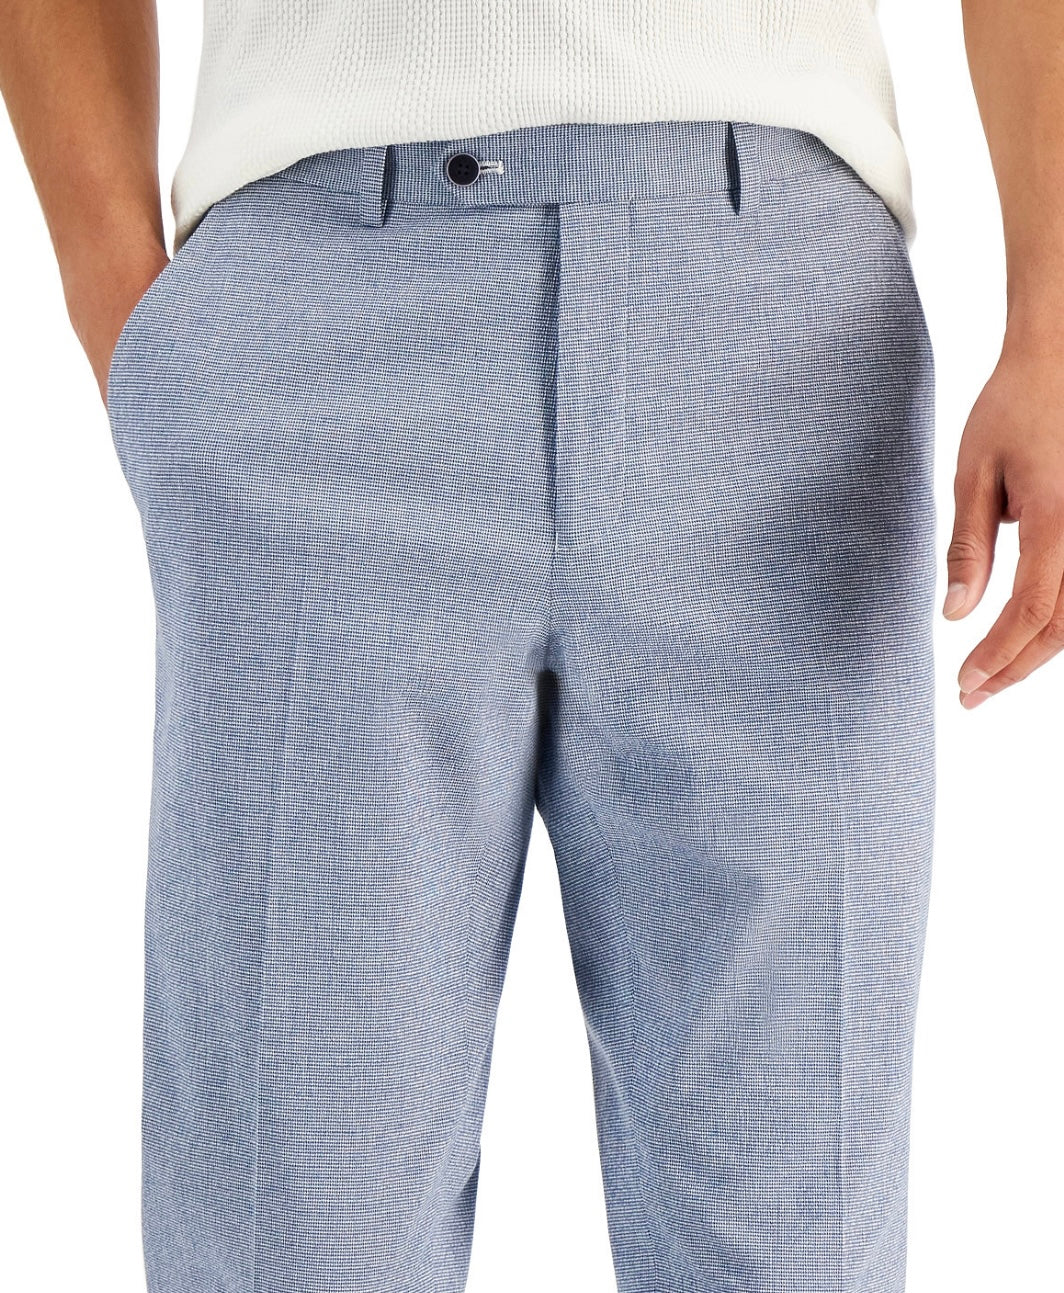 Alfani Men's Slim-Fit Seersucker Check Suit Separate Pants Blue/White Size 36x30